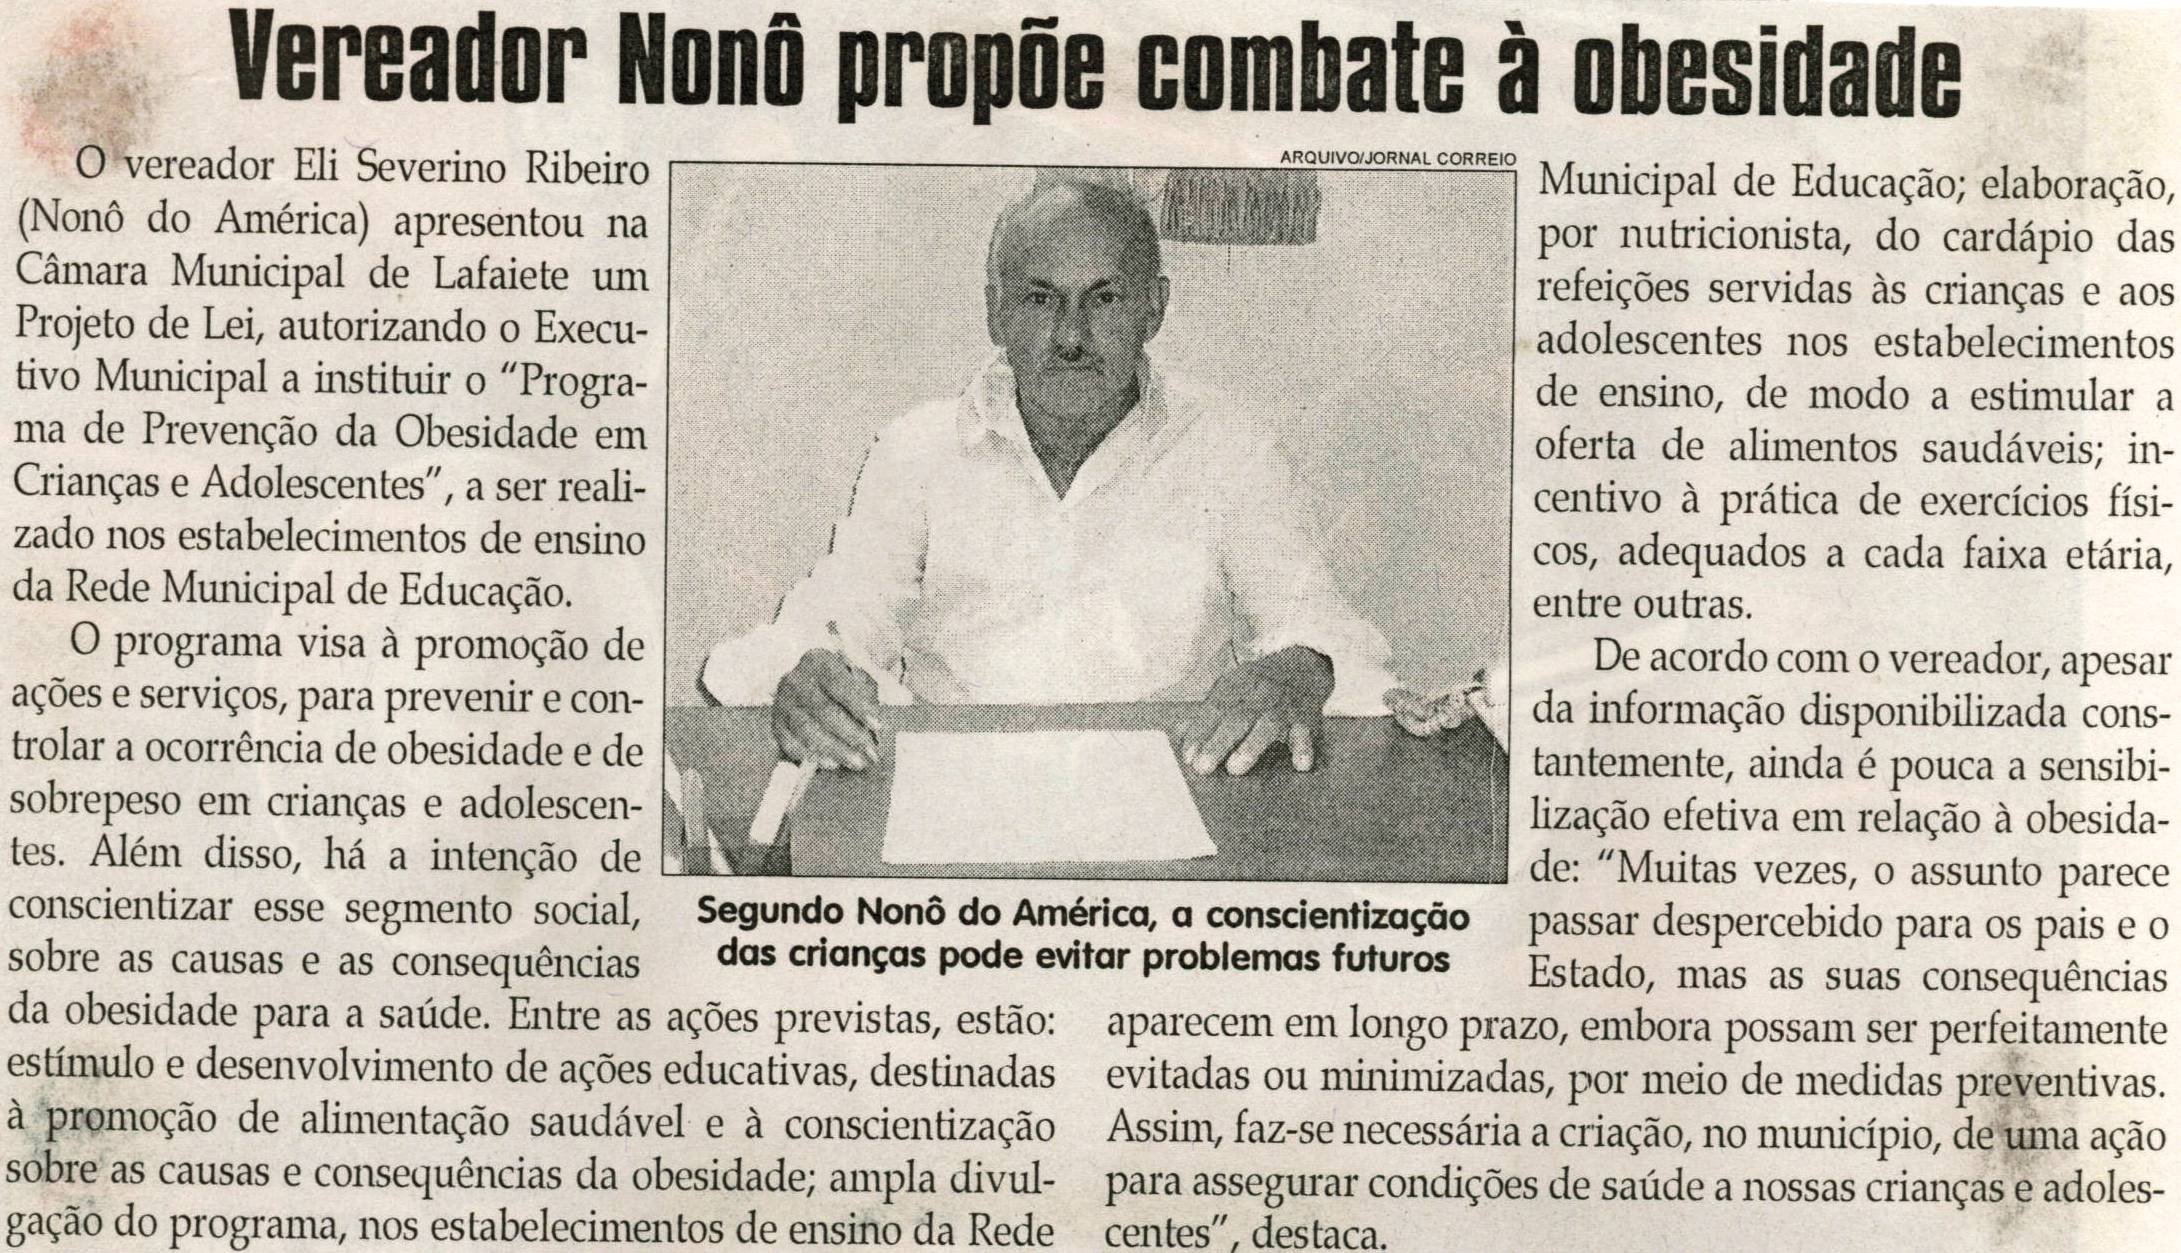 Vereador Nonô propõe combate à Obesidade, Jornal Correio da Cidade, Conselheiro Lafaiete, 18 set. 2010, p. 04.